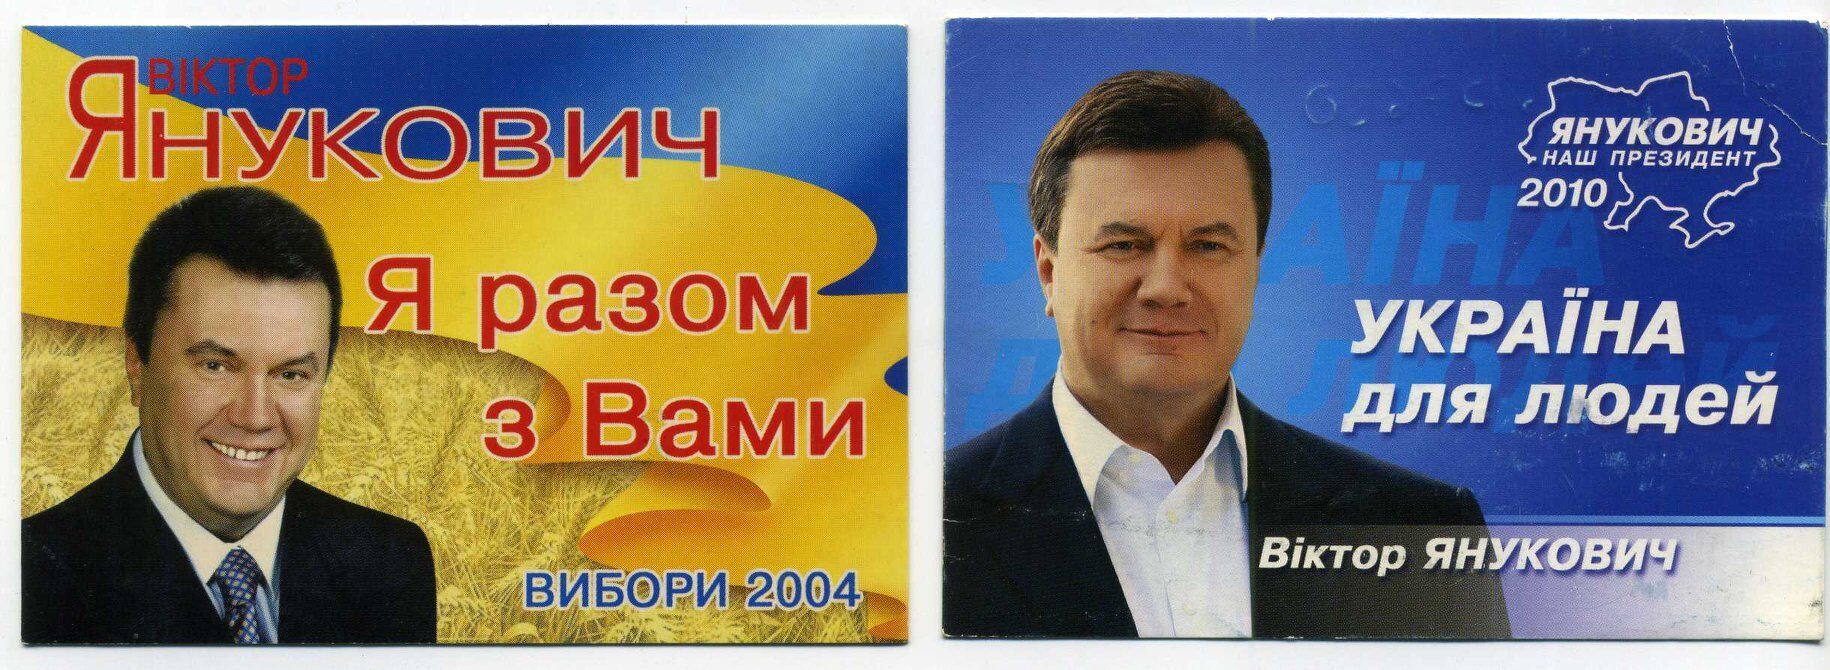 Календарики Віктора Януковича